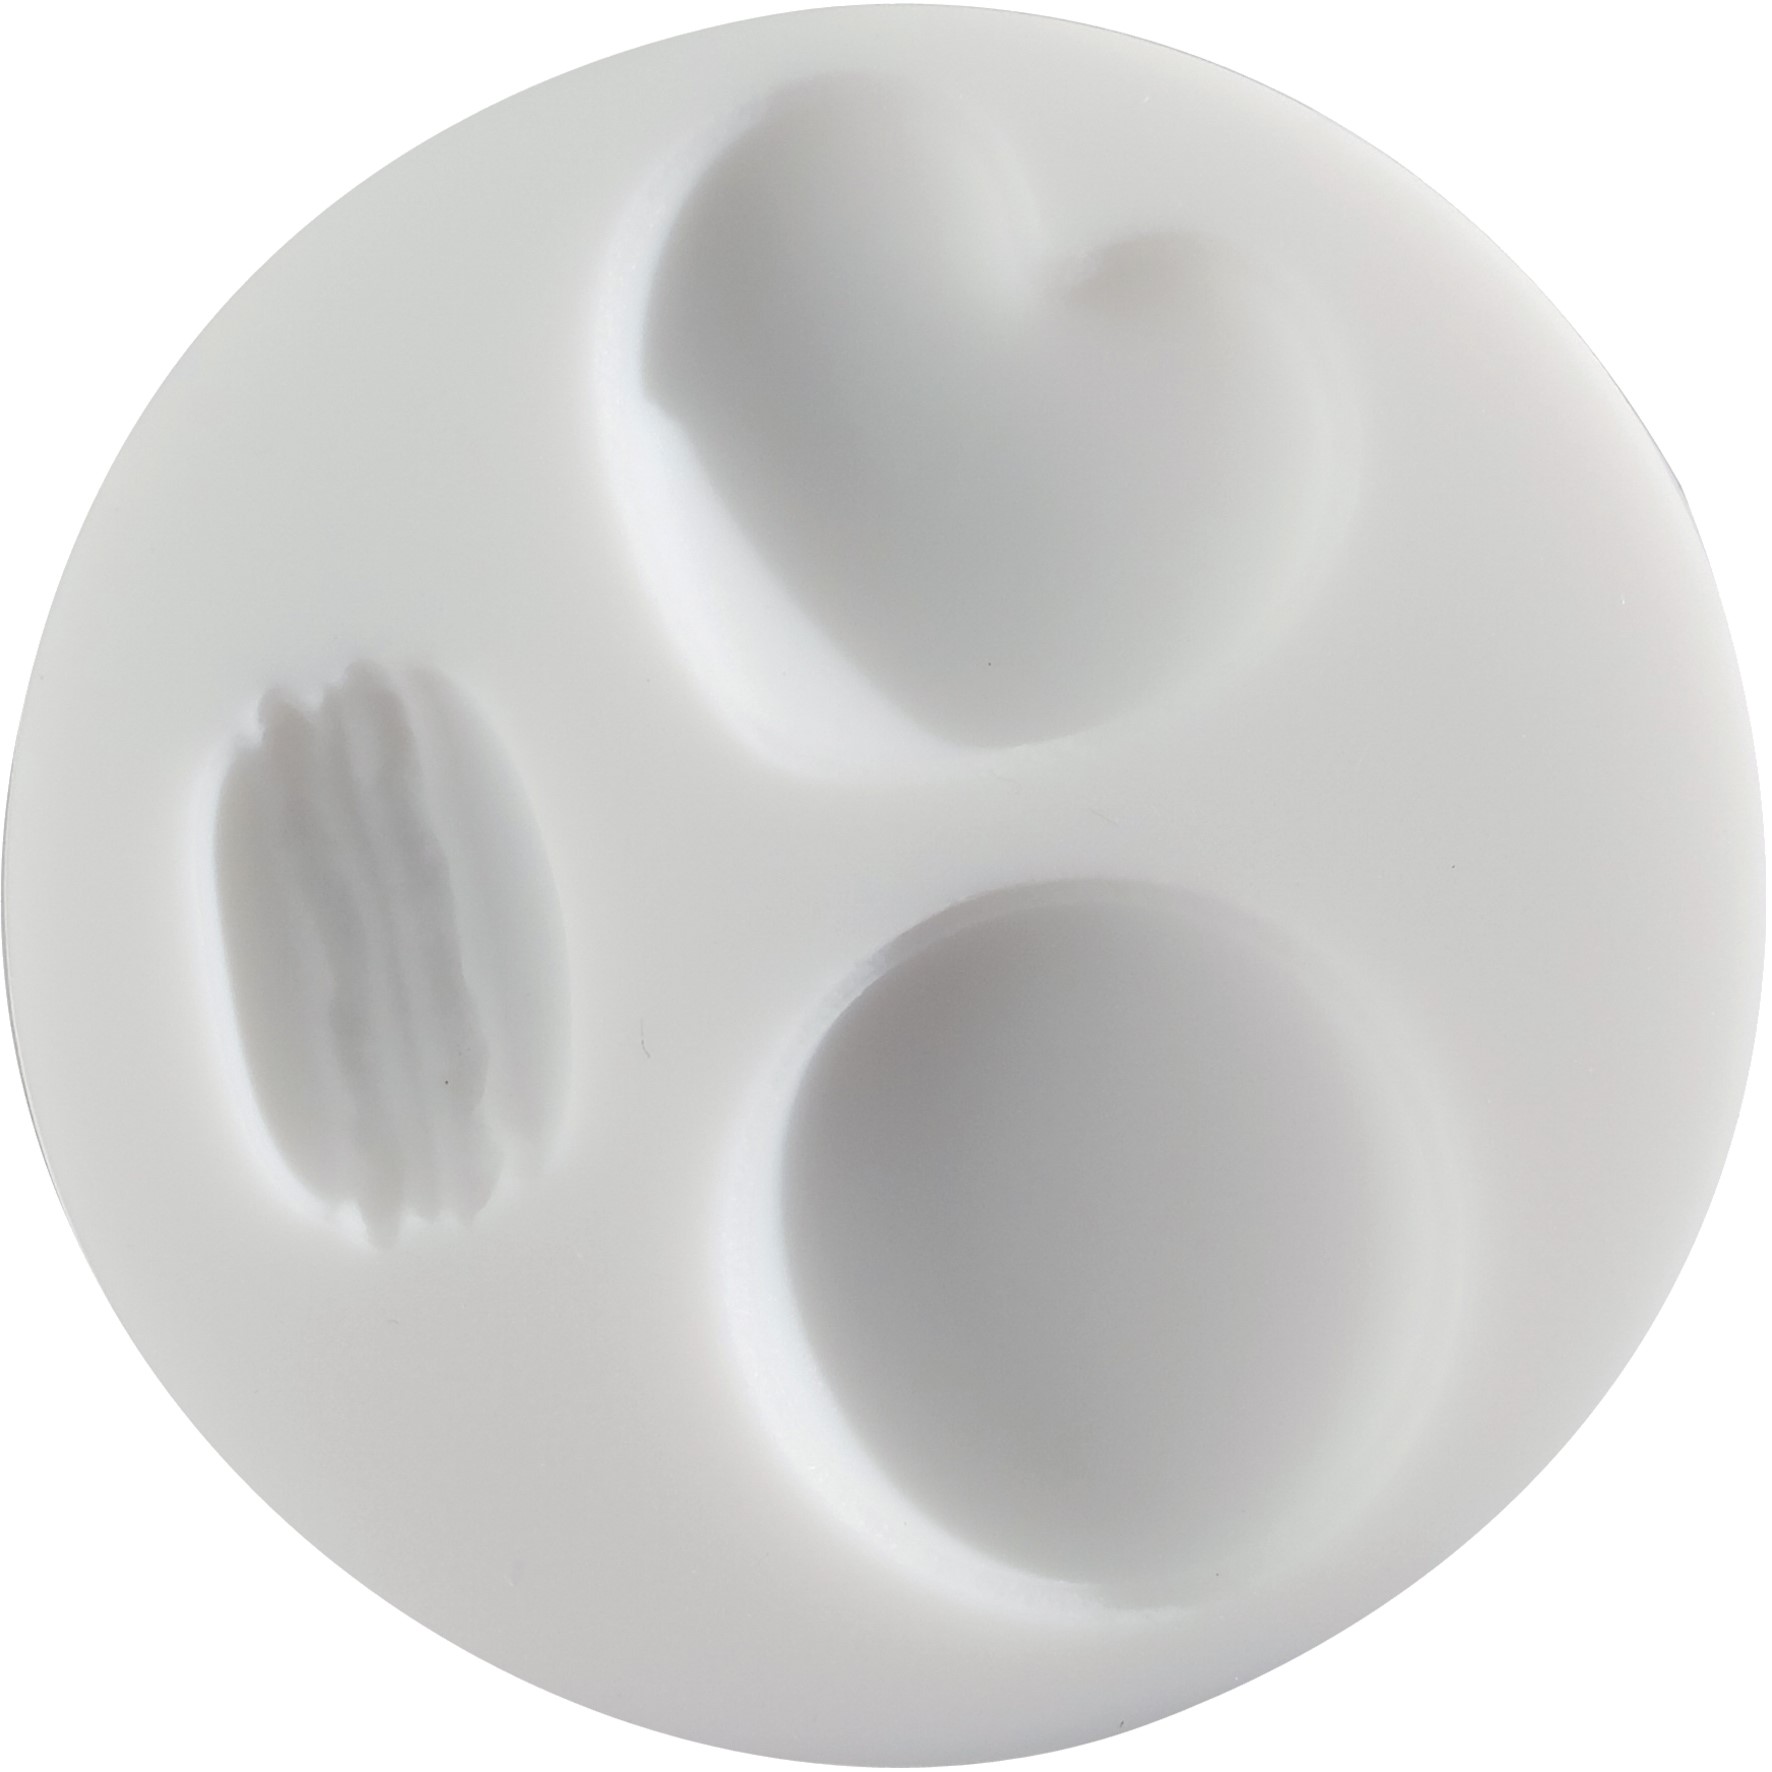 Cernit accessory - white silicone mold